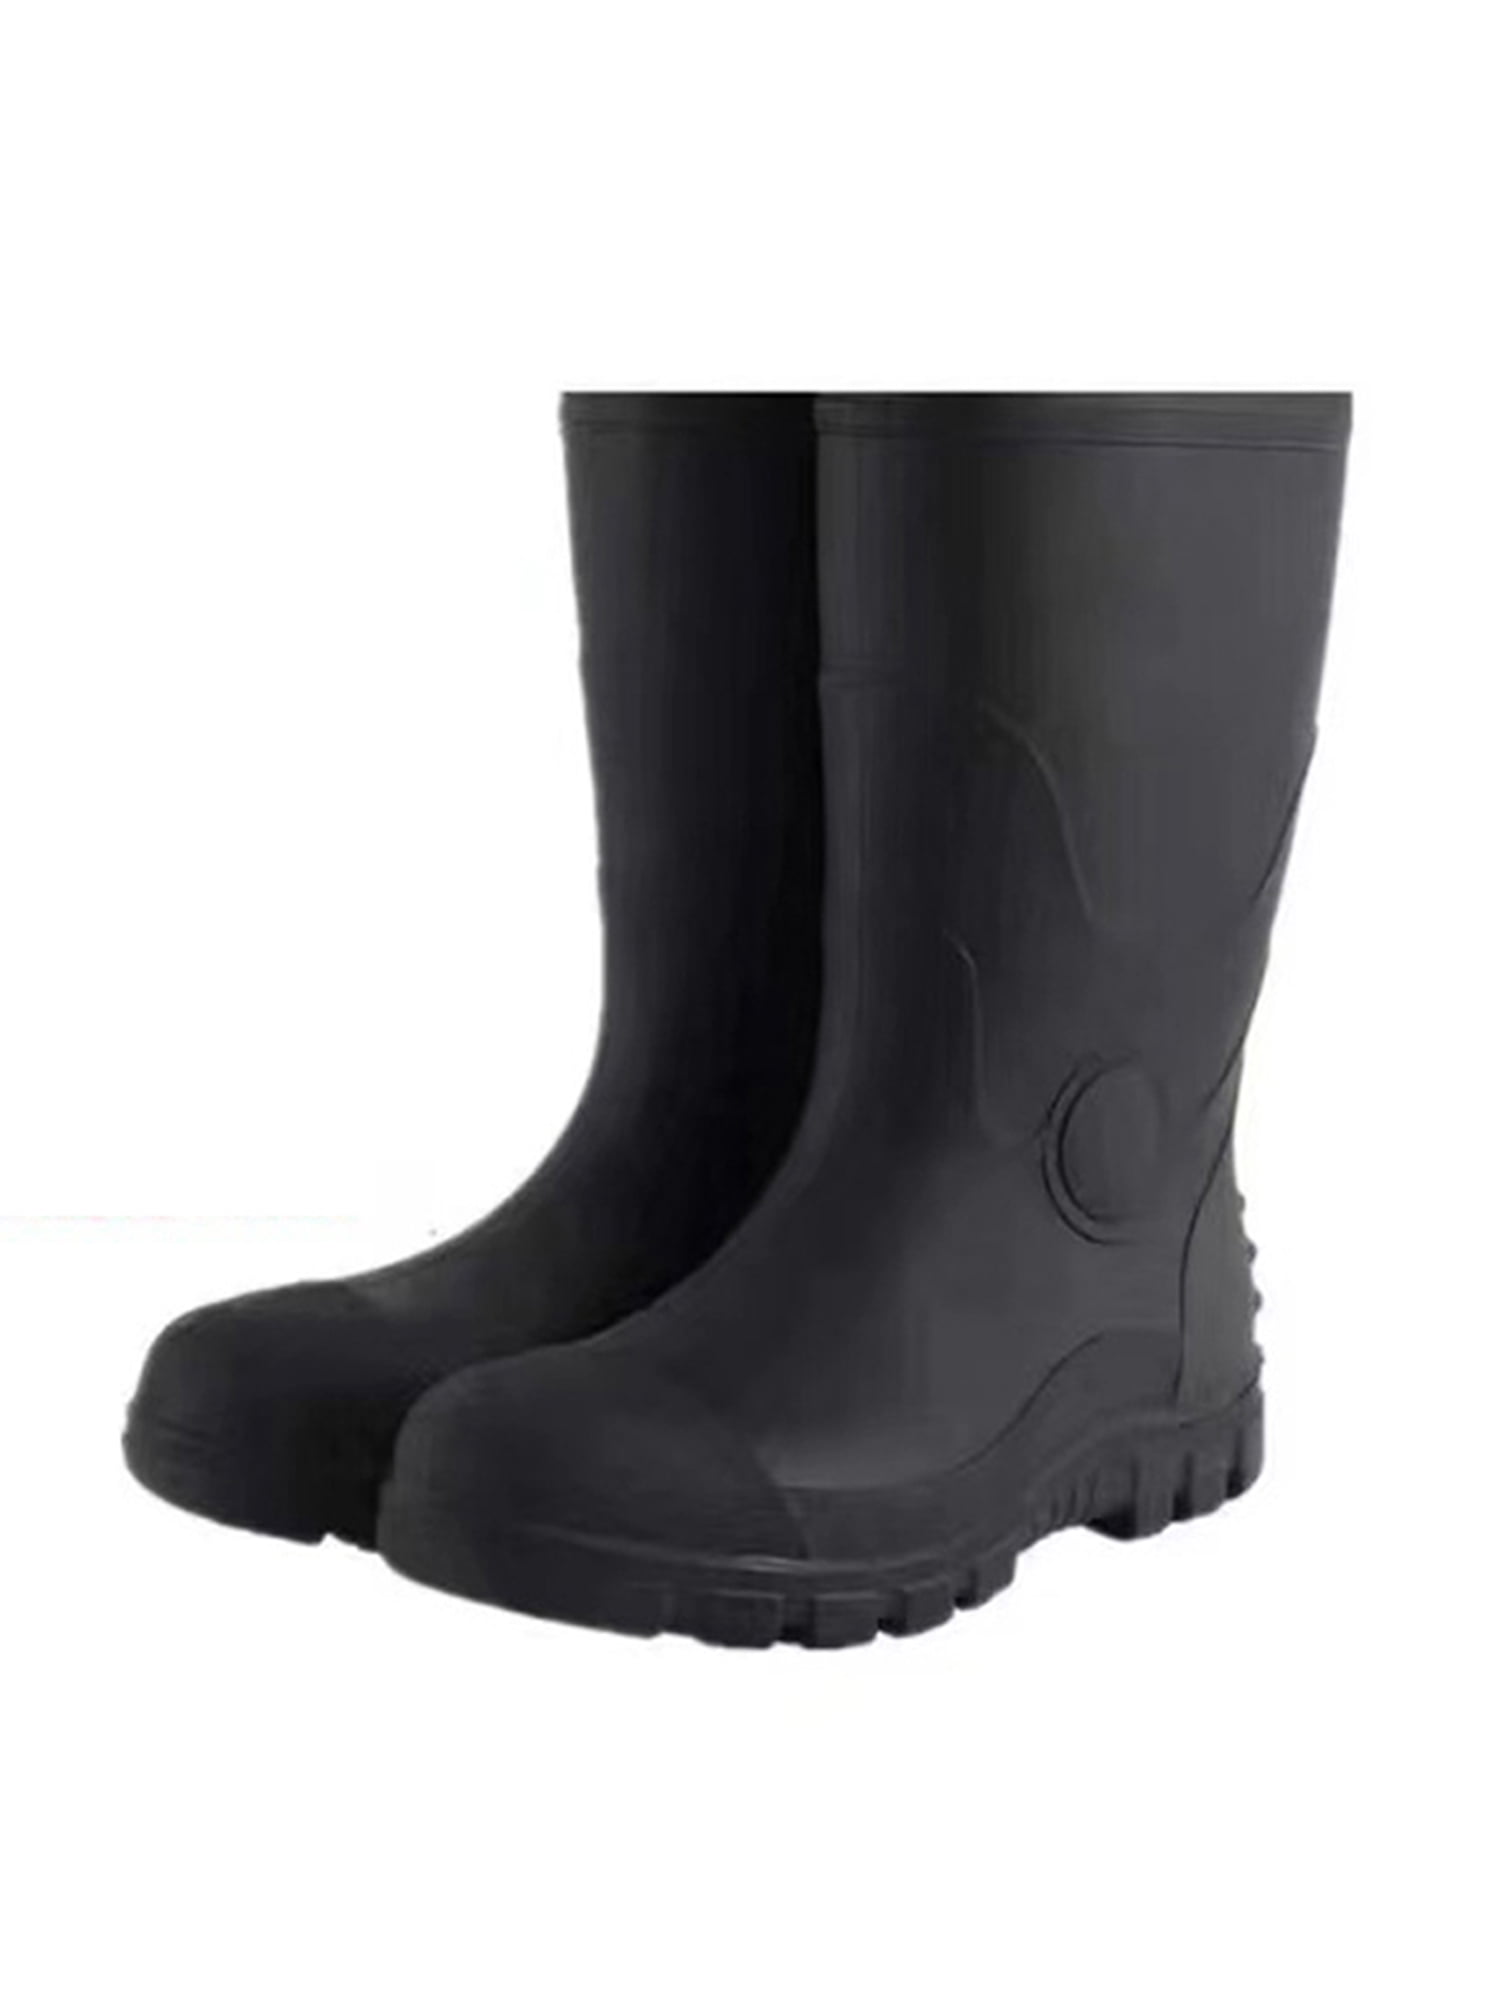 Bellella Womens Work Boots Heavy Duty Safety Shoes Steel Toe Rain Boot ...